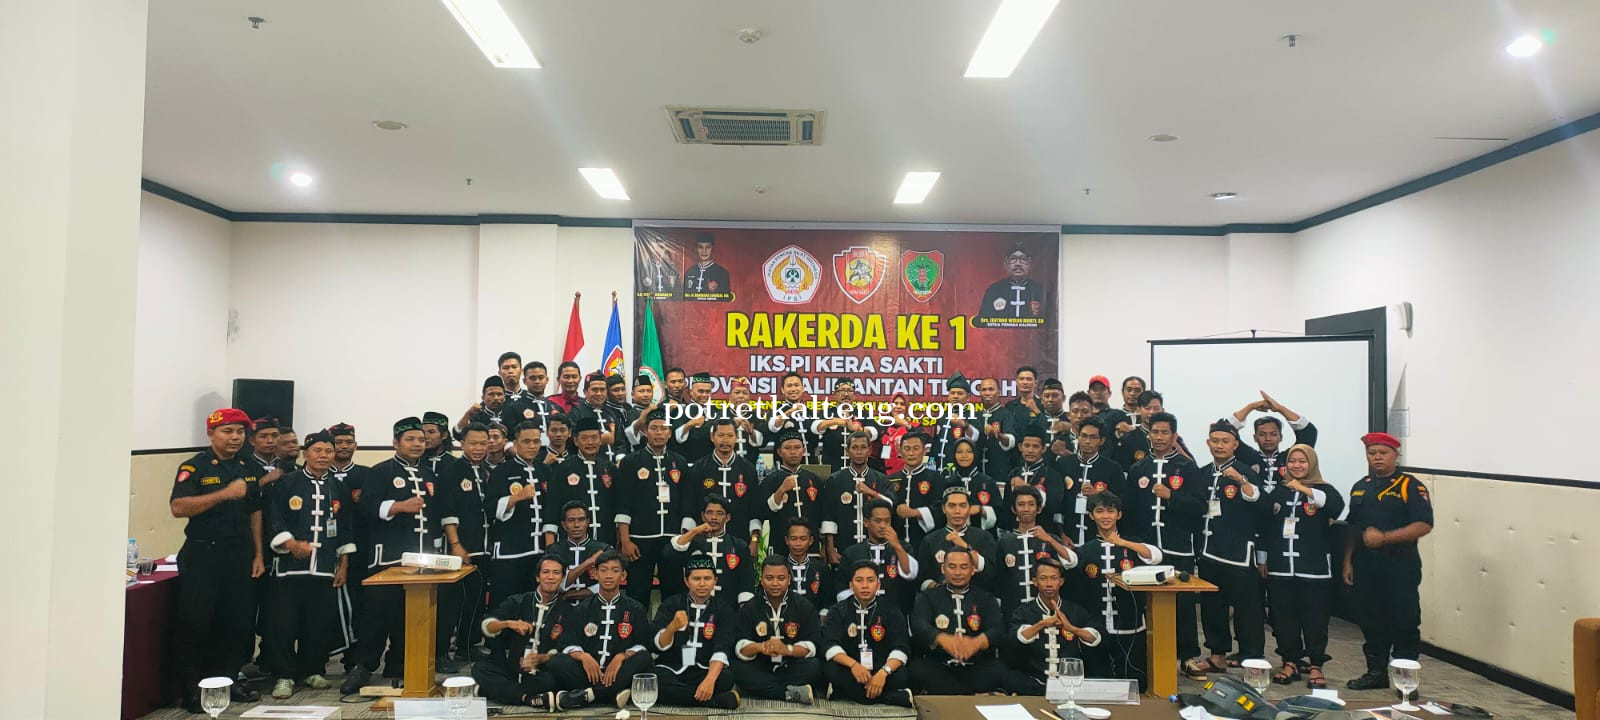 Selesai Laksanakan Rakerda, Pengurus Daerah IKSPI Kalteng Fokus Siapkan Atlet